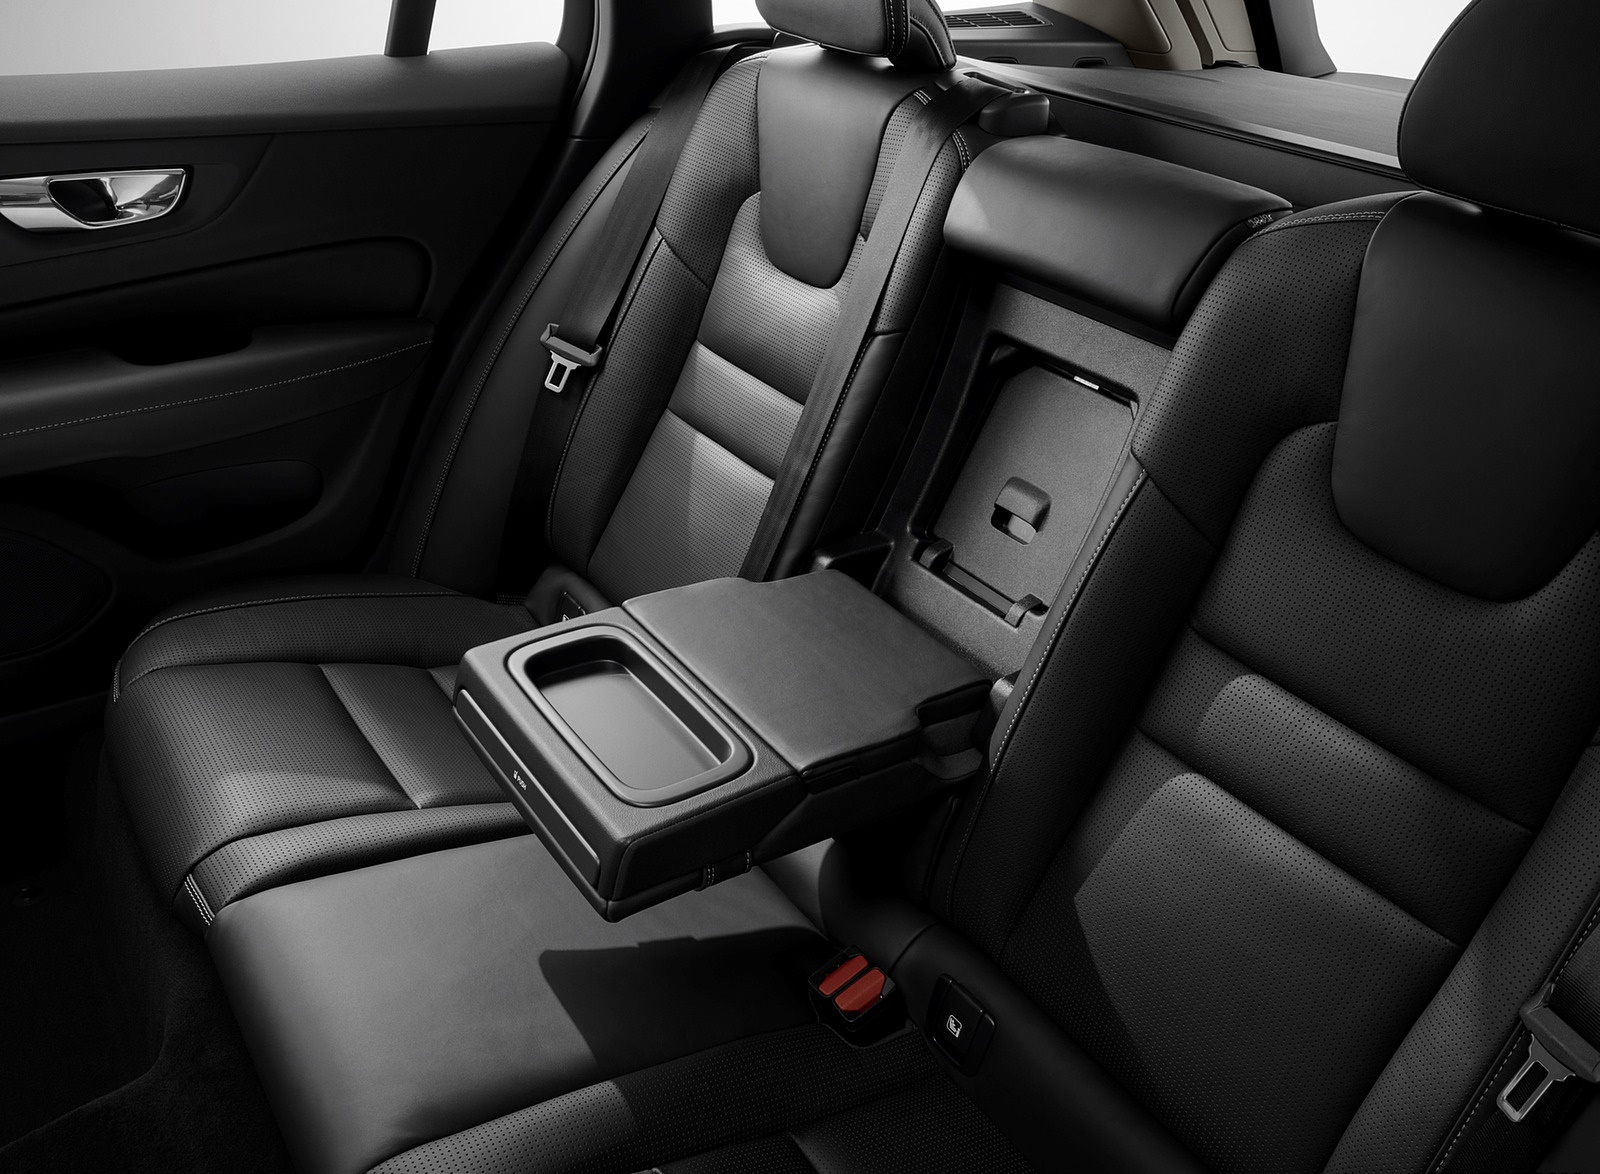 2019 Volvo V60 Interior Rear Seats Wallpapers #118 of 140